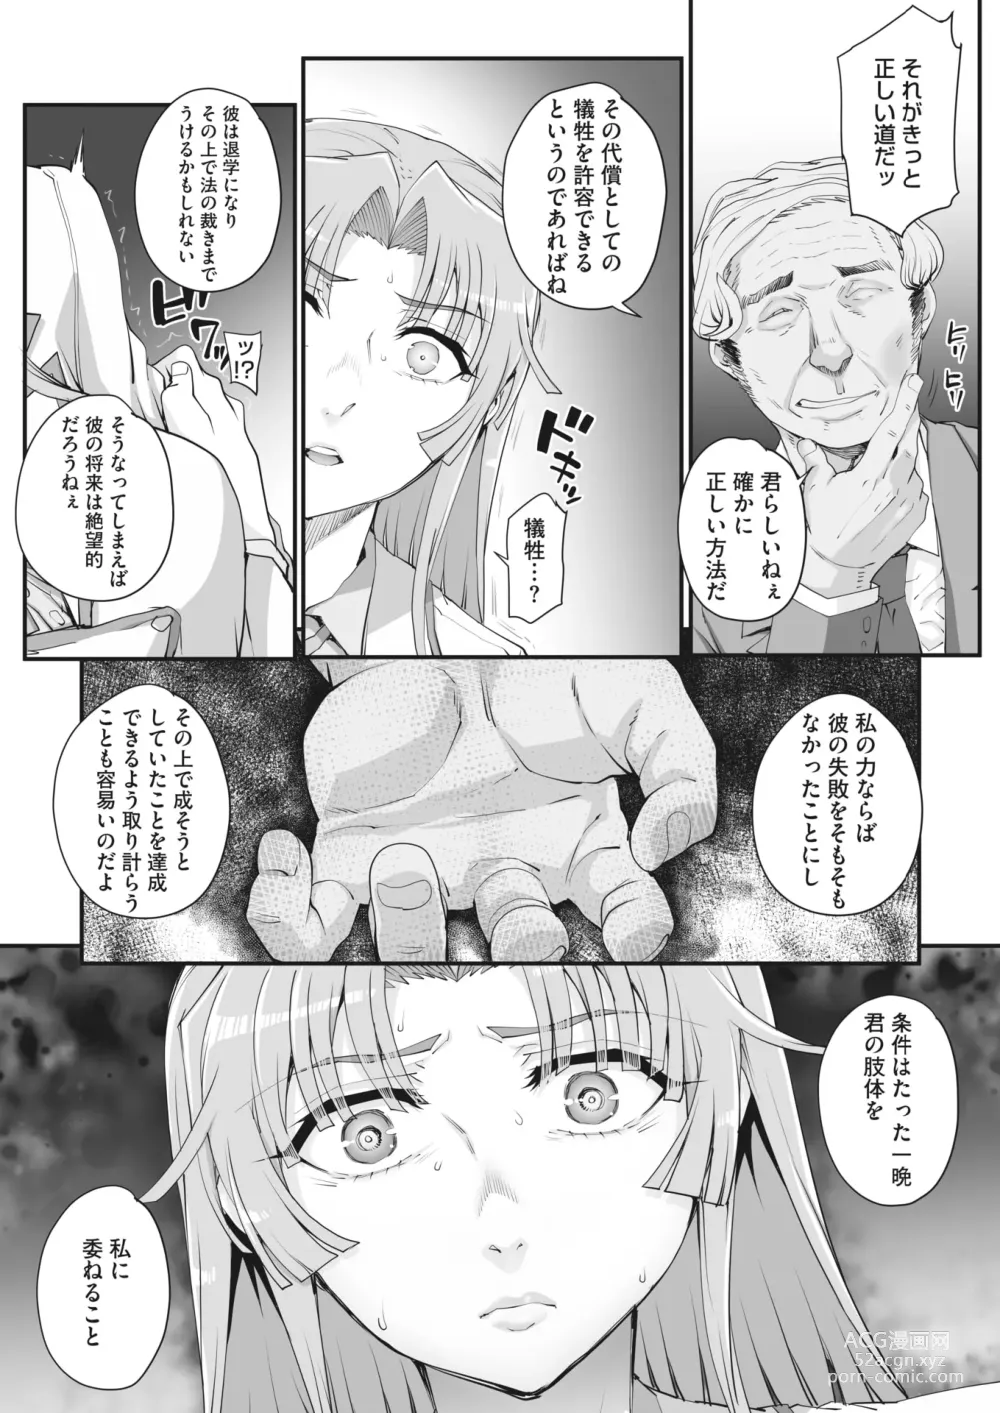 Page 6 of manga 性濁併セ呑ム Ch.1.4